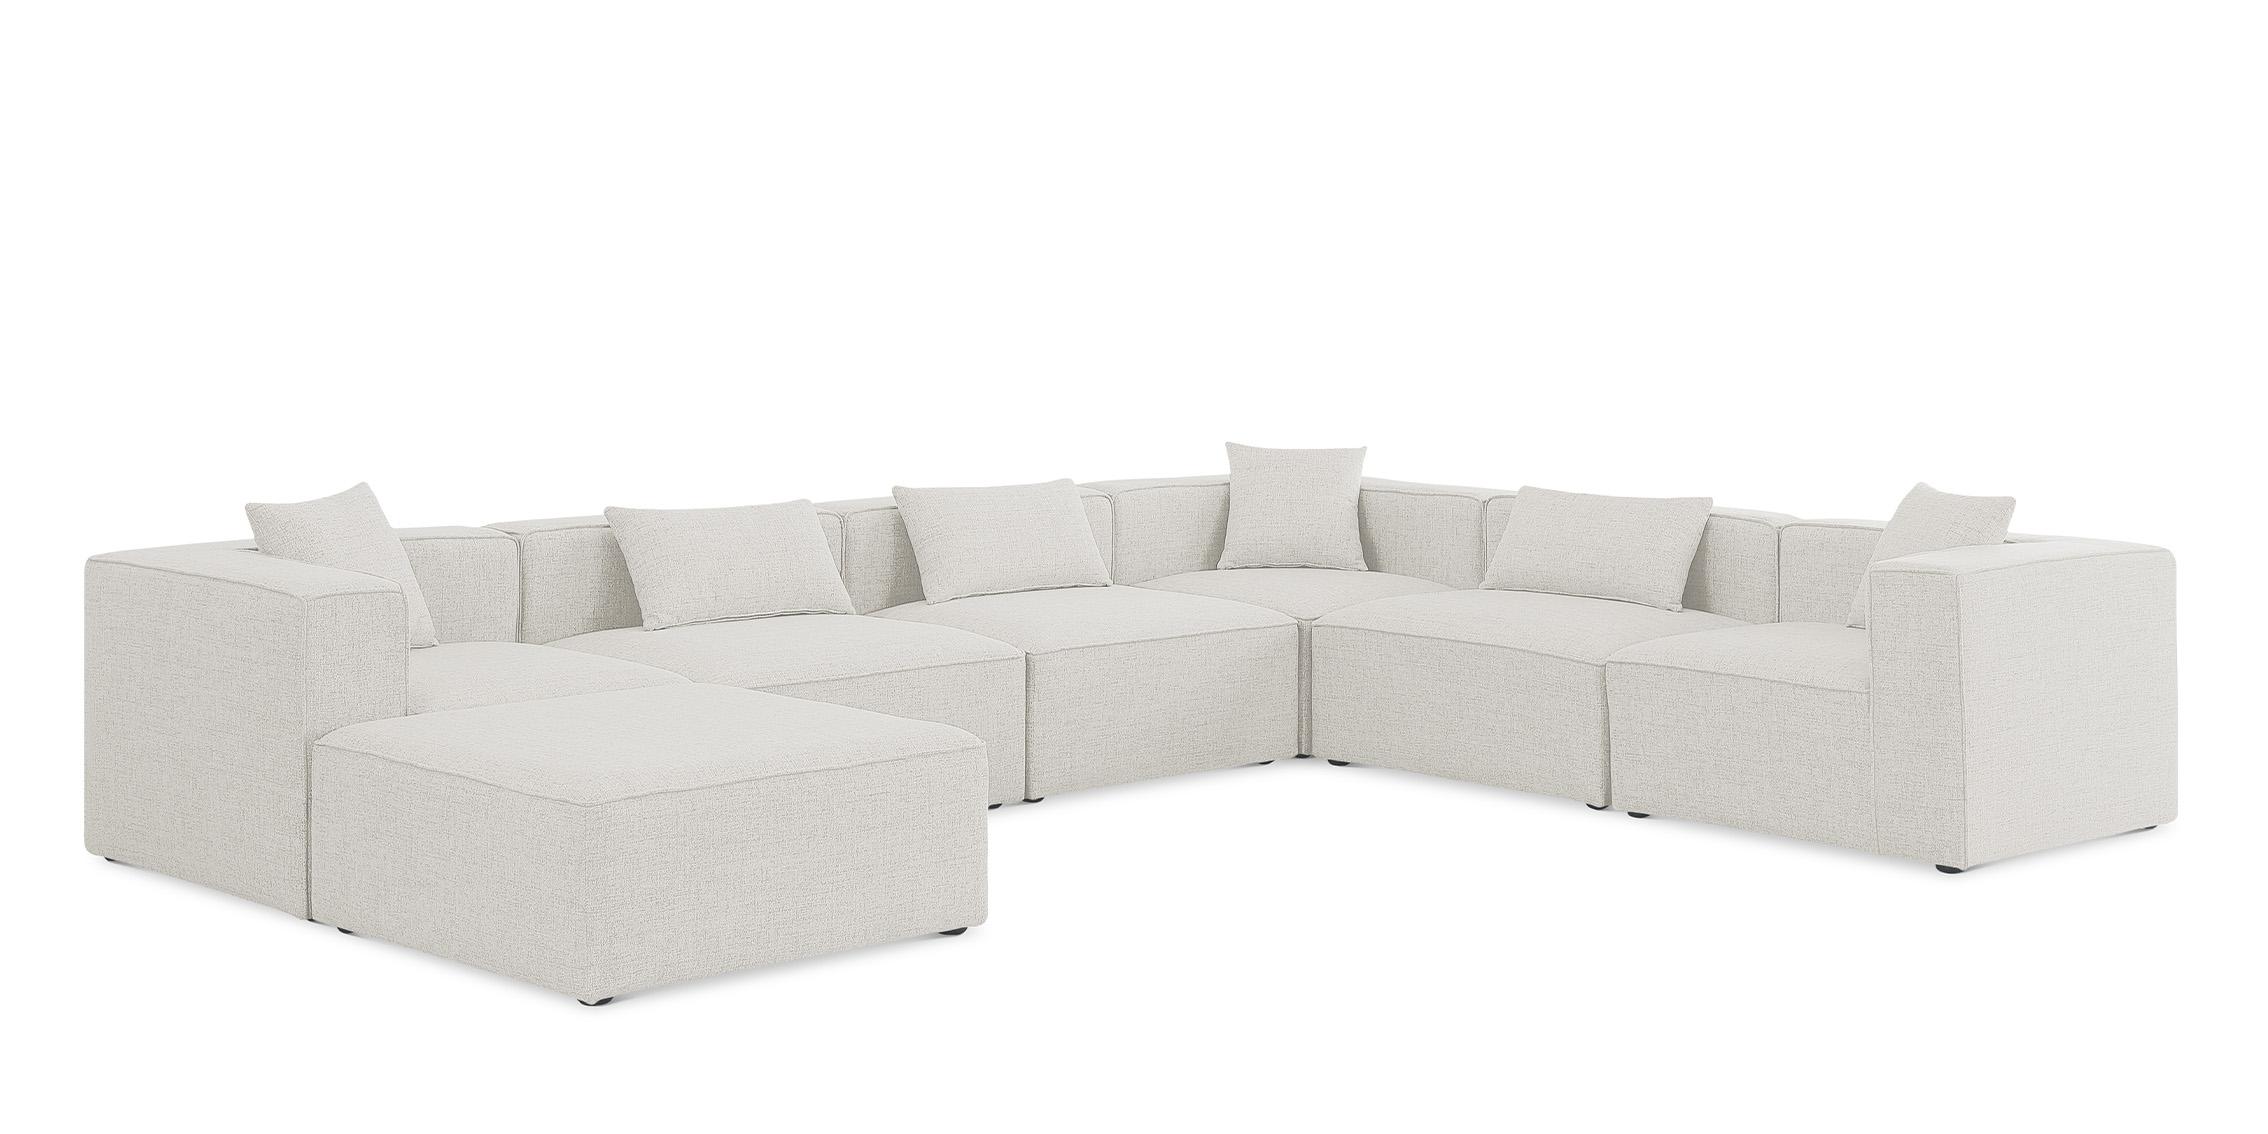 Contemporary, Modern Modular Sectional Sofa CUBE 630Cream-Sec7A 630Cream-Sec7A in Cream Linen